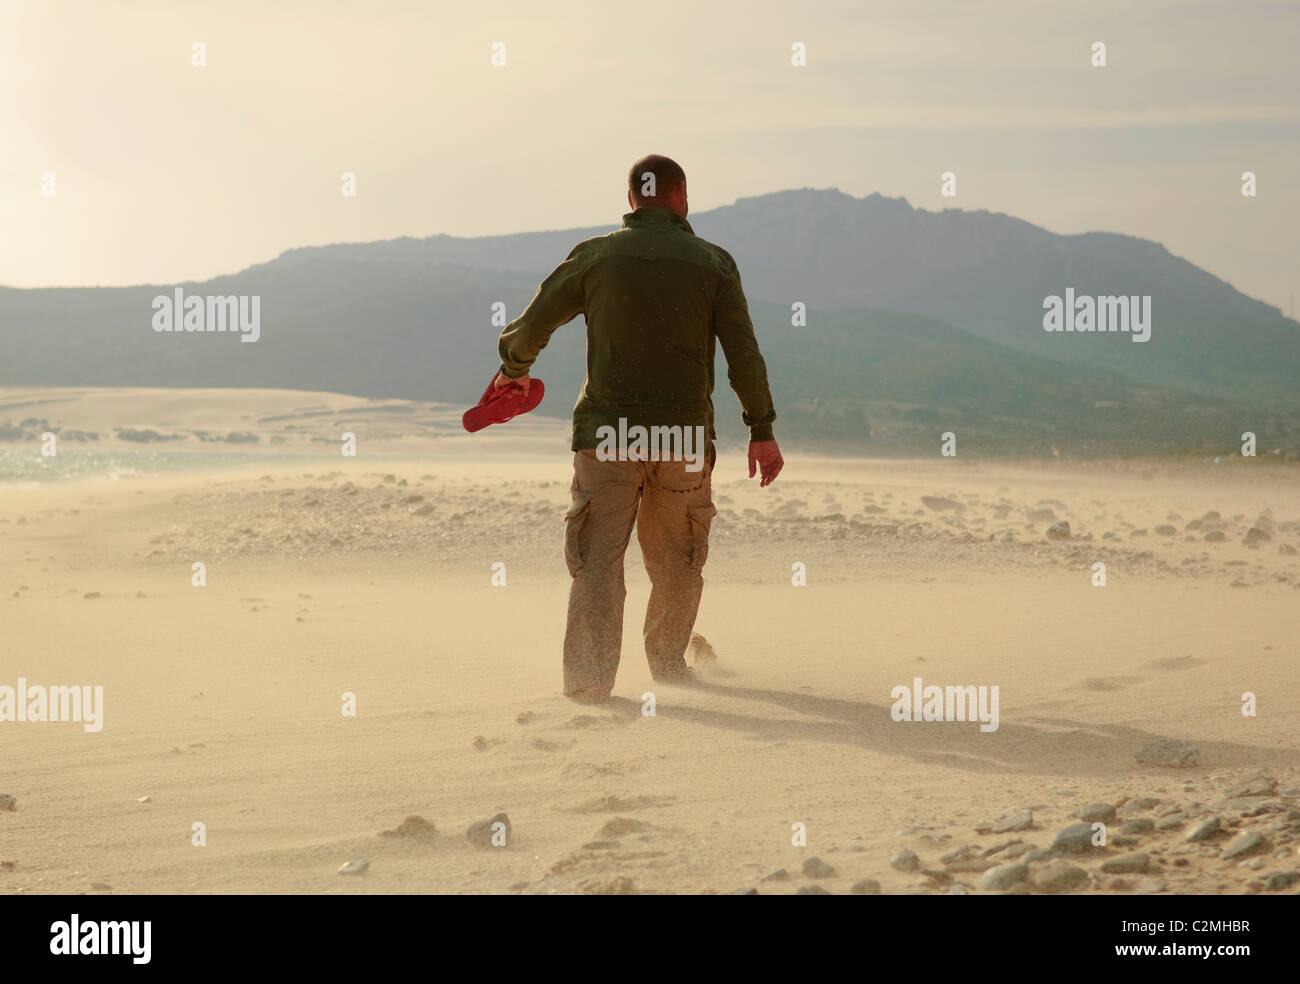 Man Walking on Sand Banque D'Images